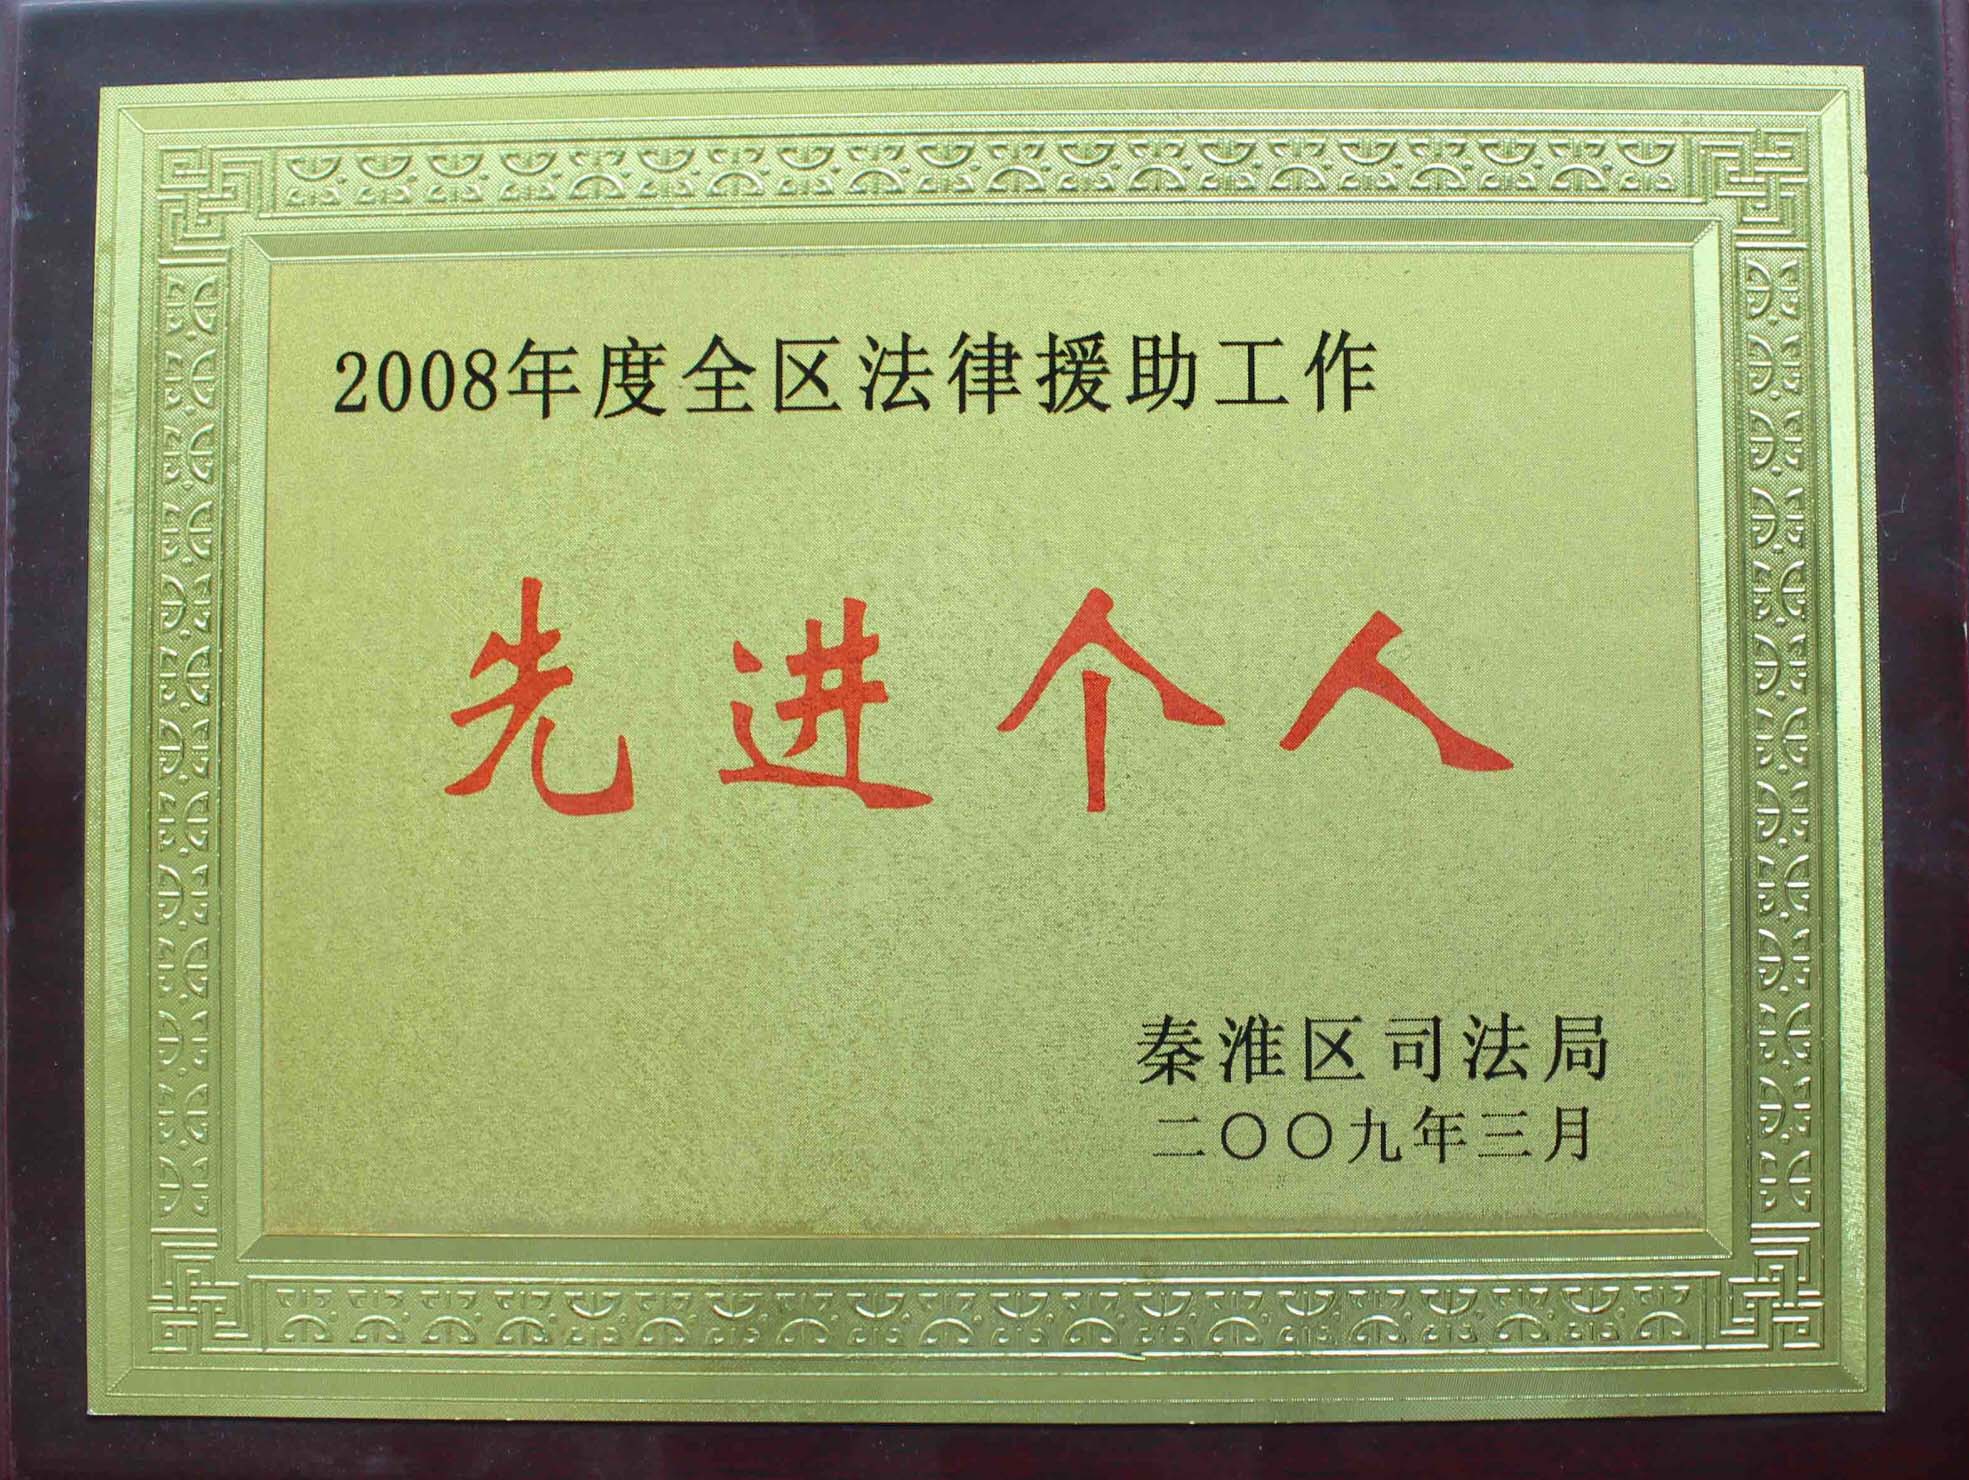 2008年秦淮区法律援助 先进个人